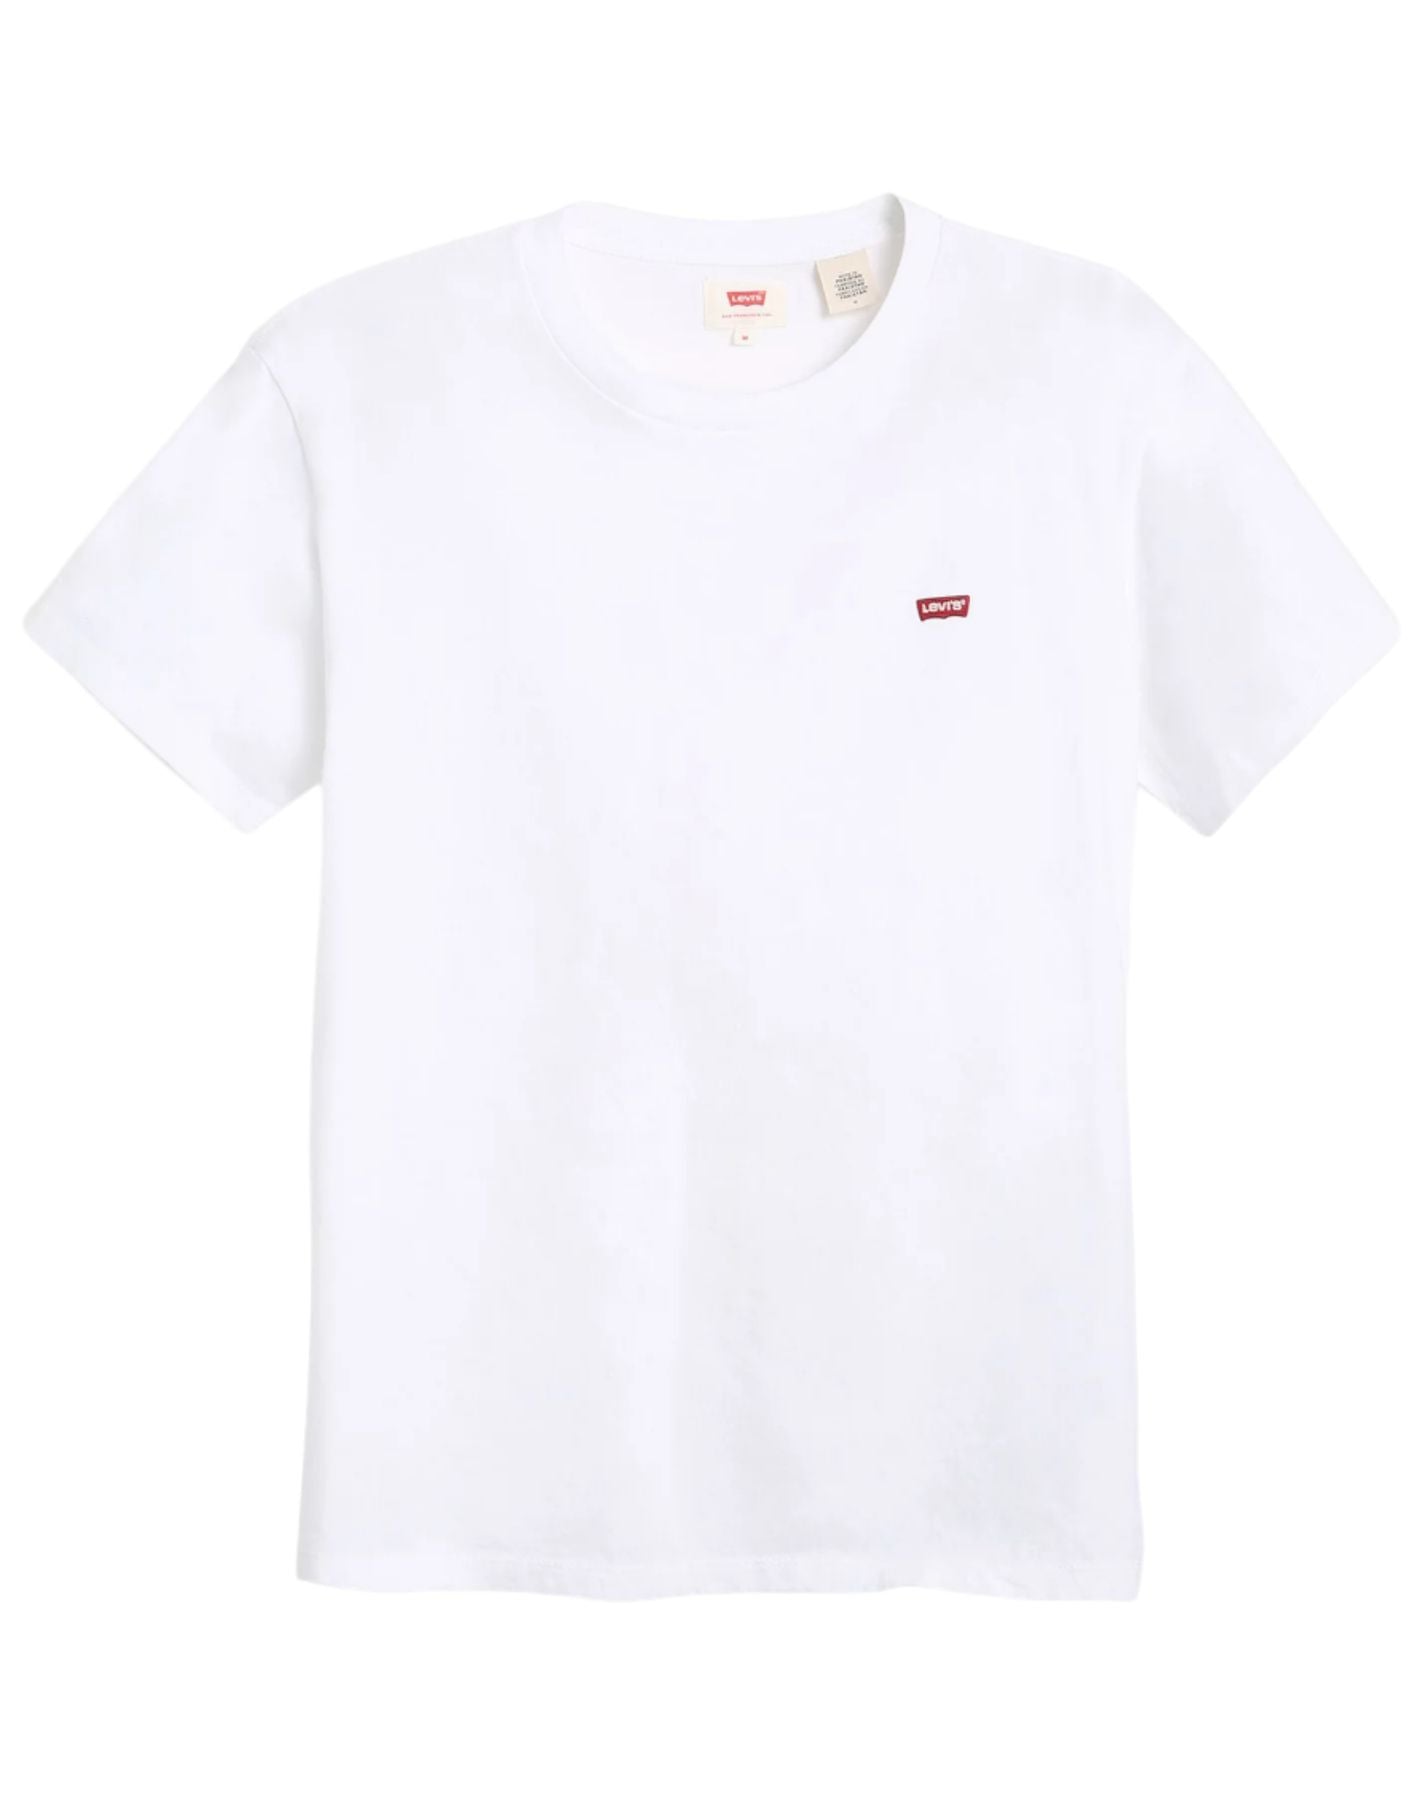 Camiseta hombre 56605 0000 Levi blanco